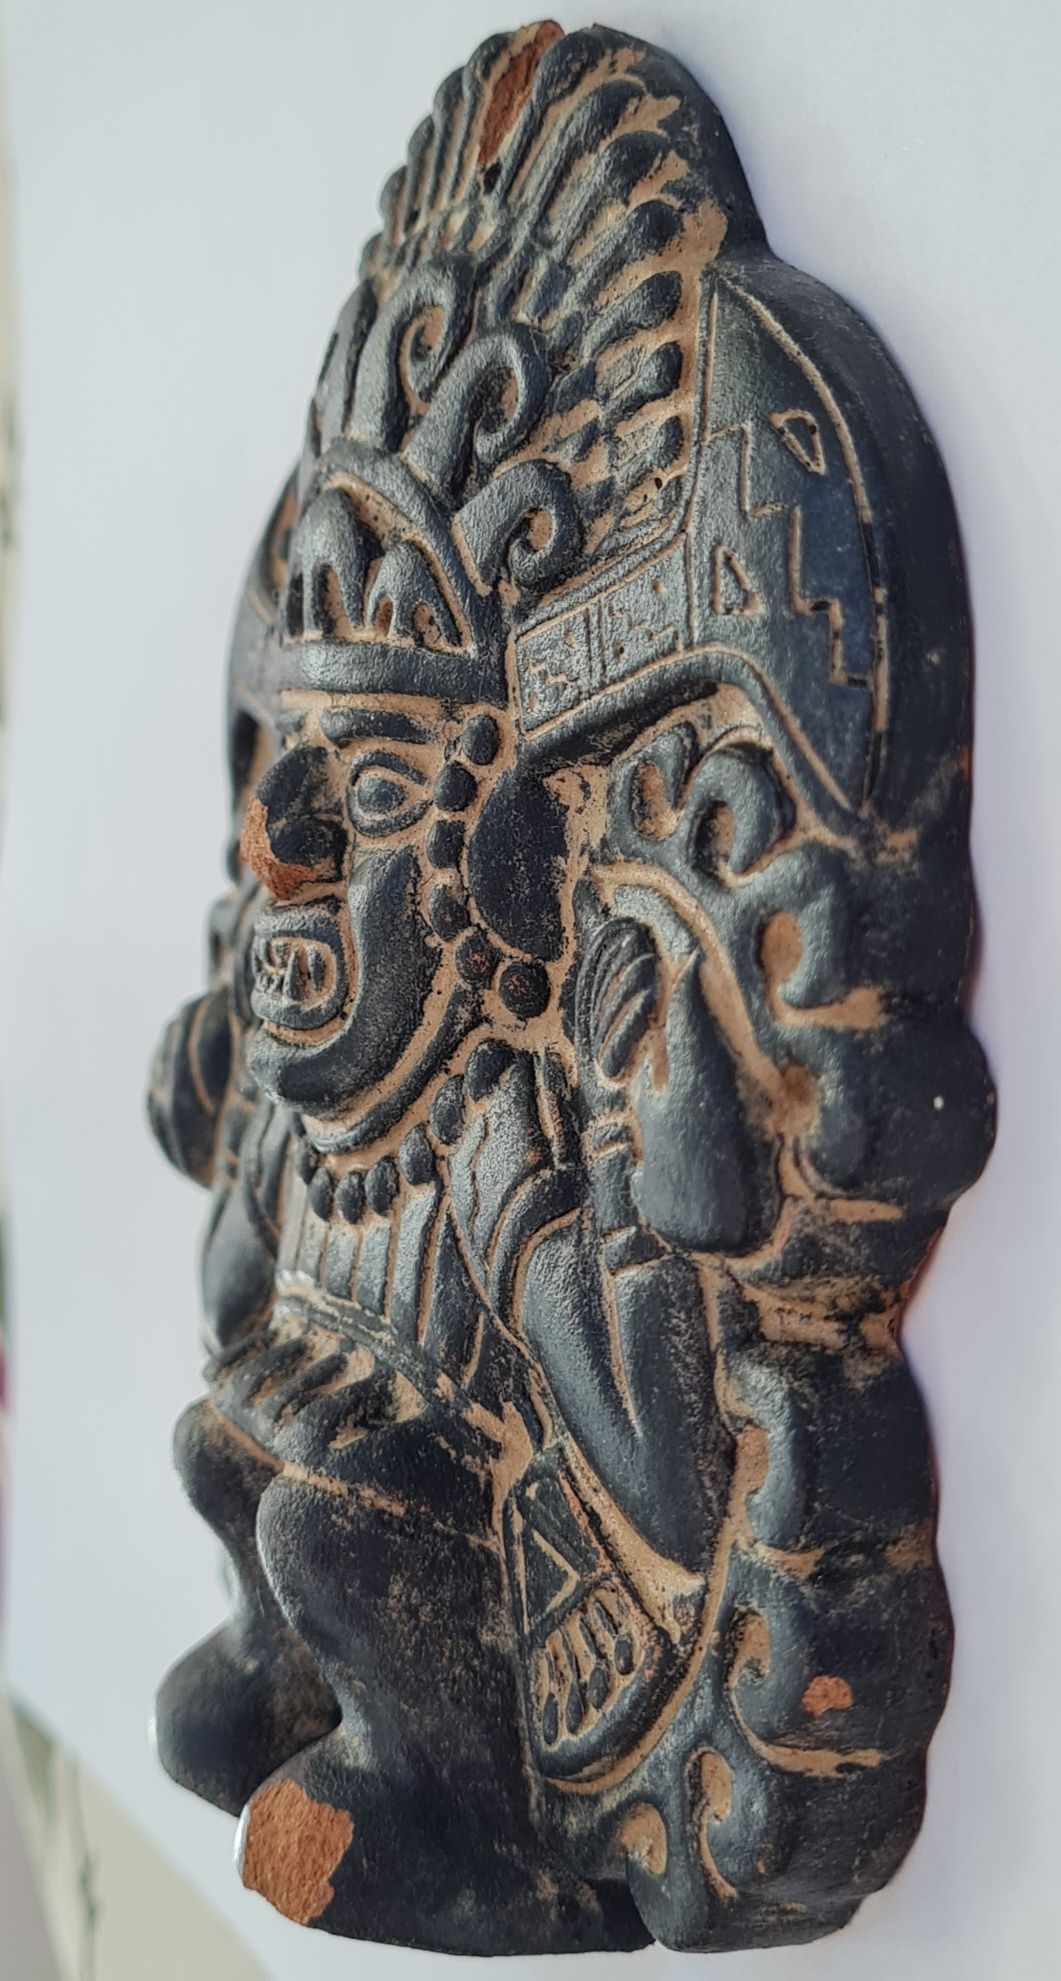 Ceramica Peru - Razboinicul